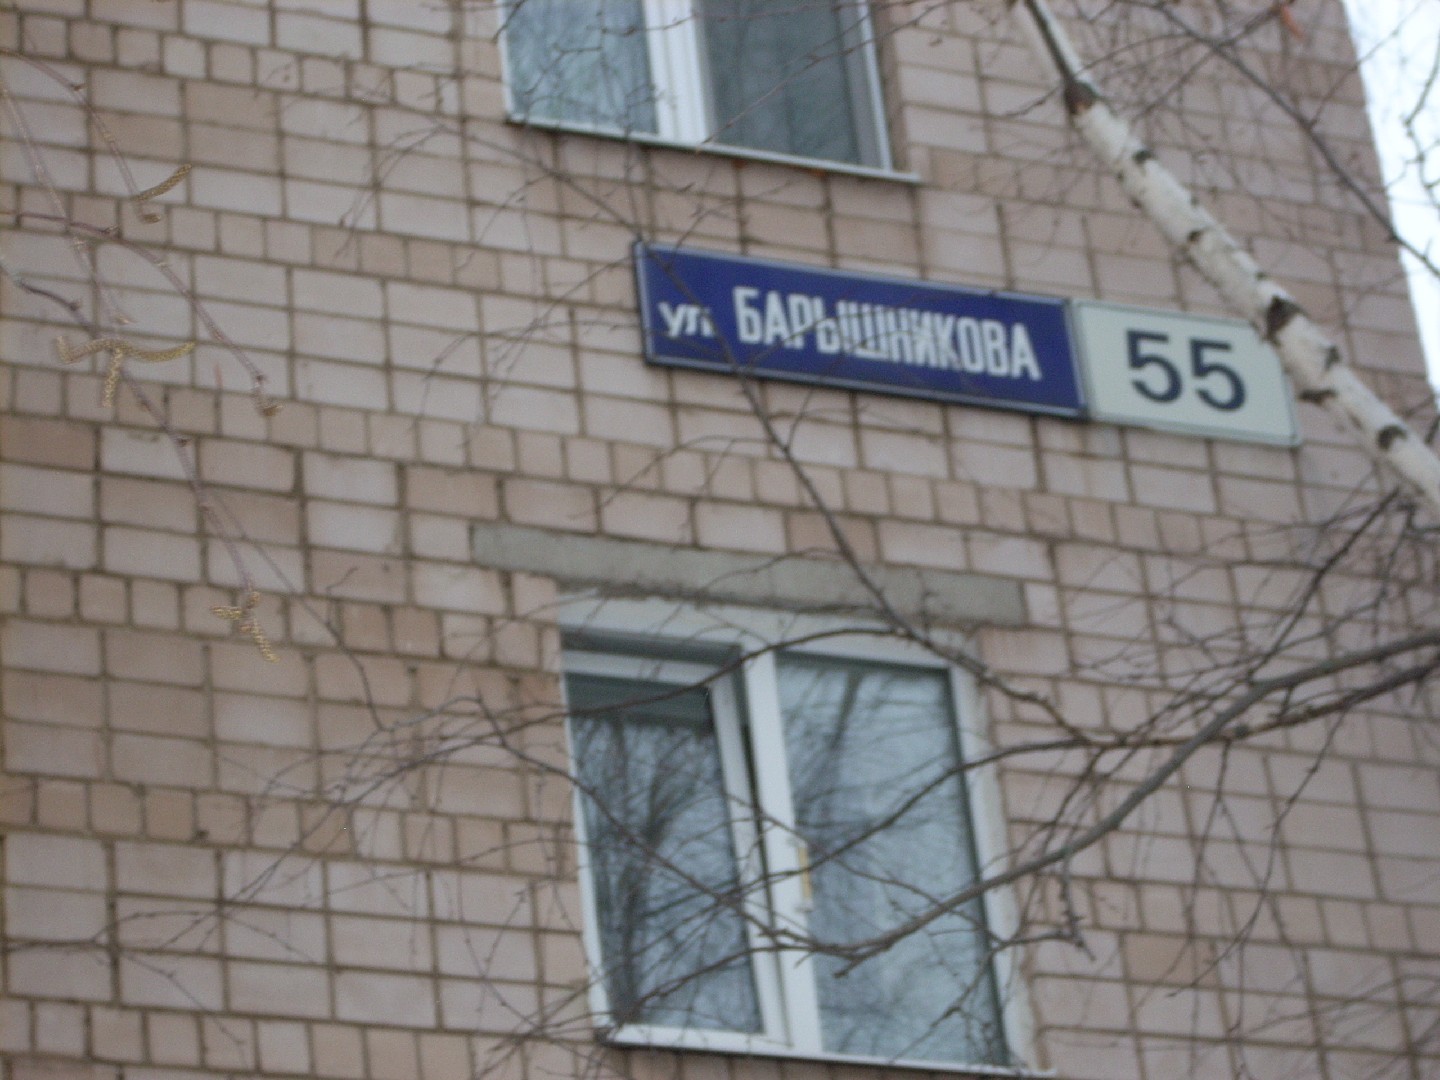 Респ. Удмуртская, г. Ижевск, ул. им Барышникова, д. 55-фасад здания